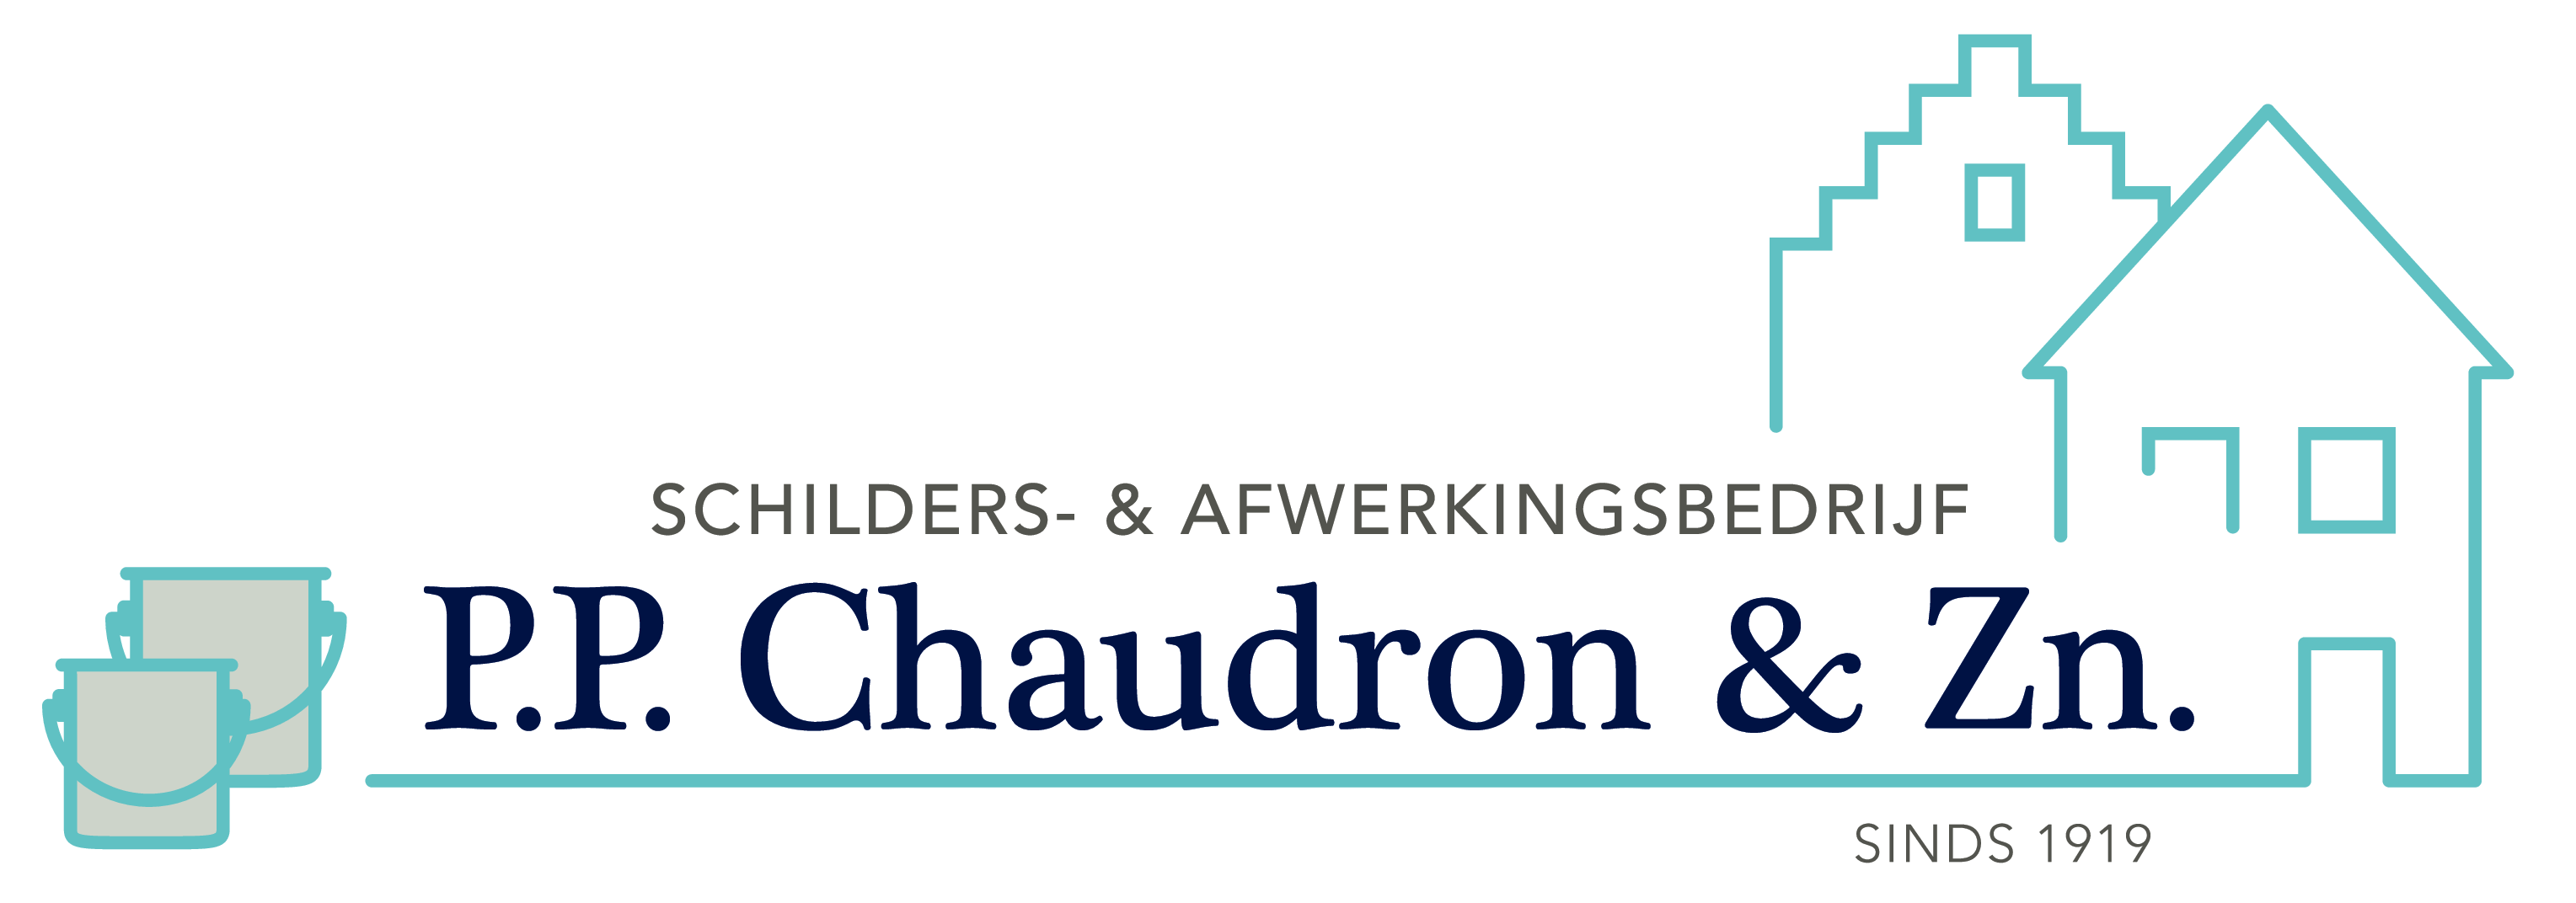 Schilders- & afwerkingsbedrijf P.P. Chaudron & Zn.